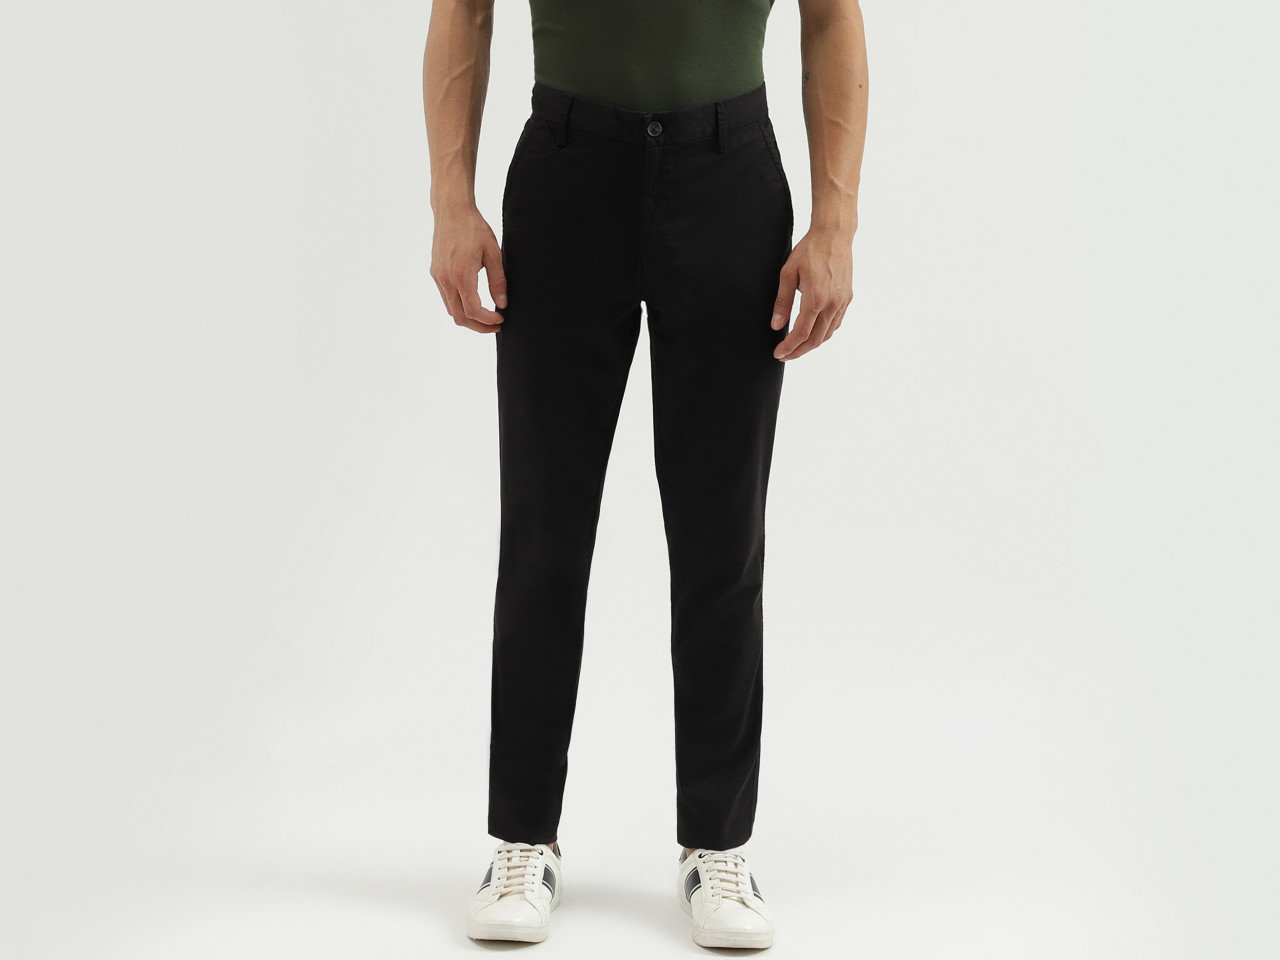 Buy Black Cotton Slim Fit Men's Trousers-North Republic